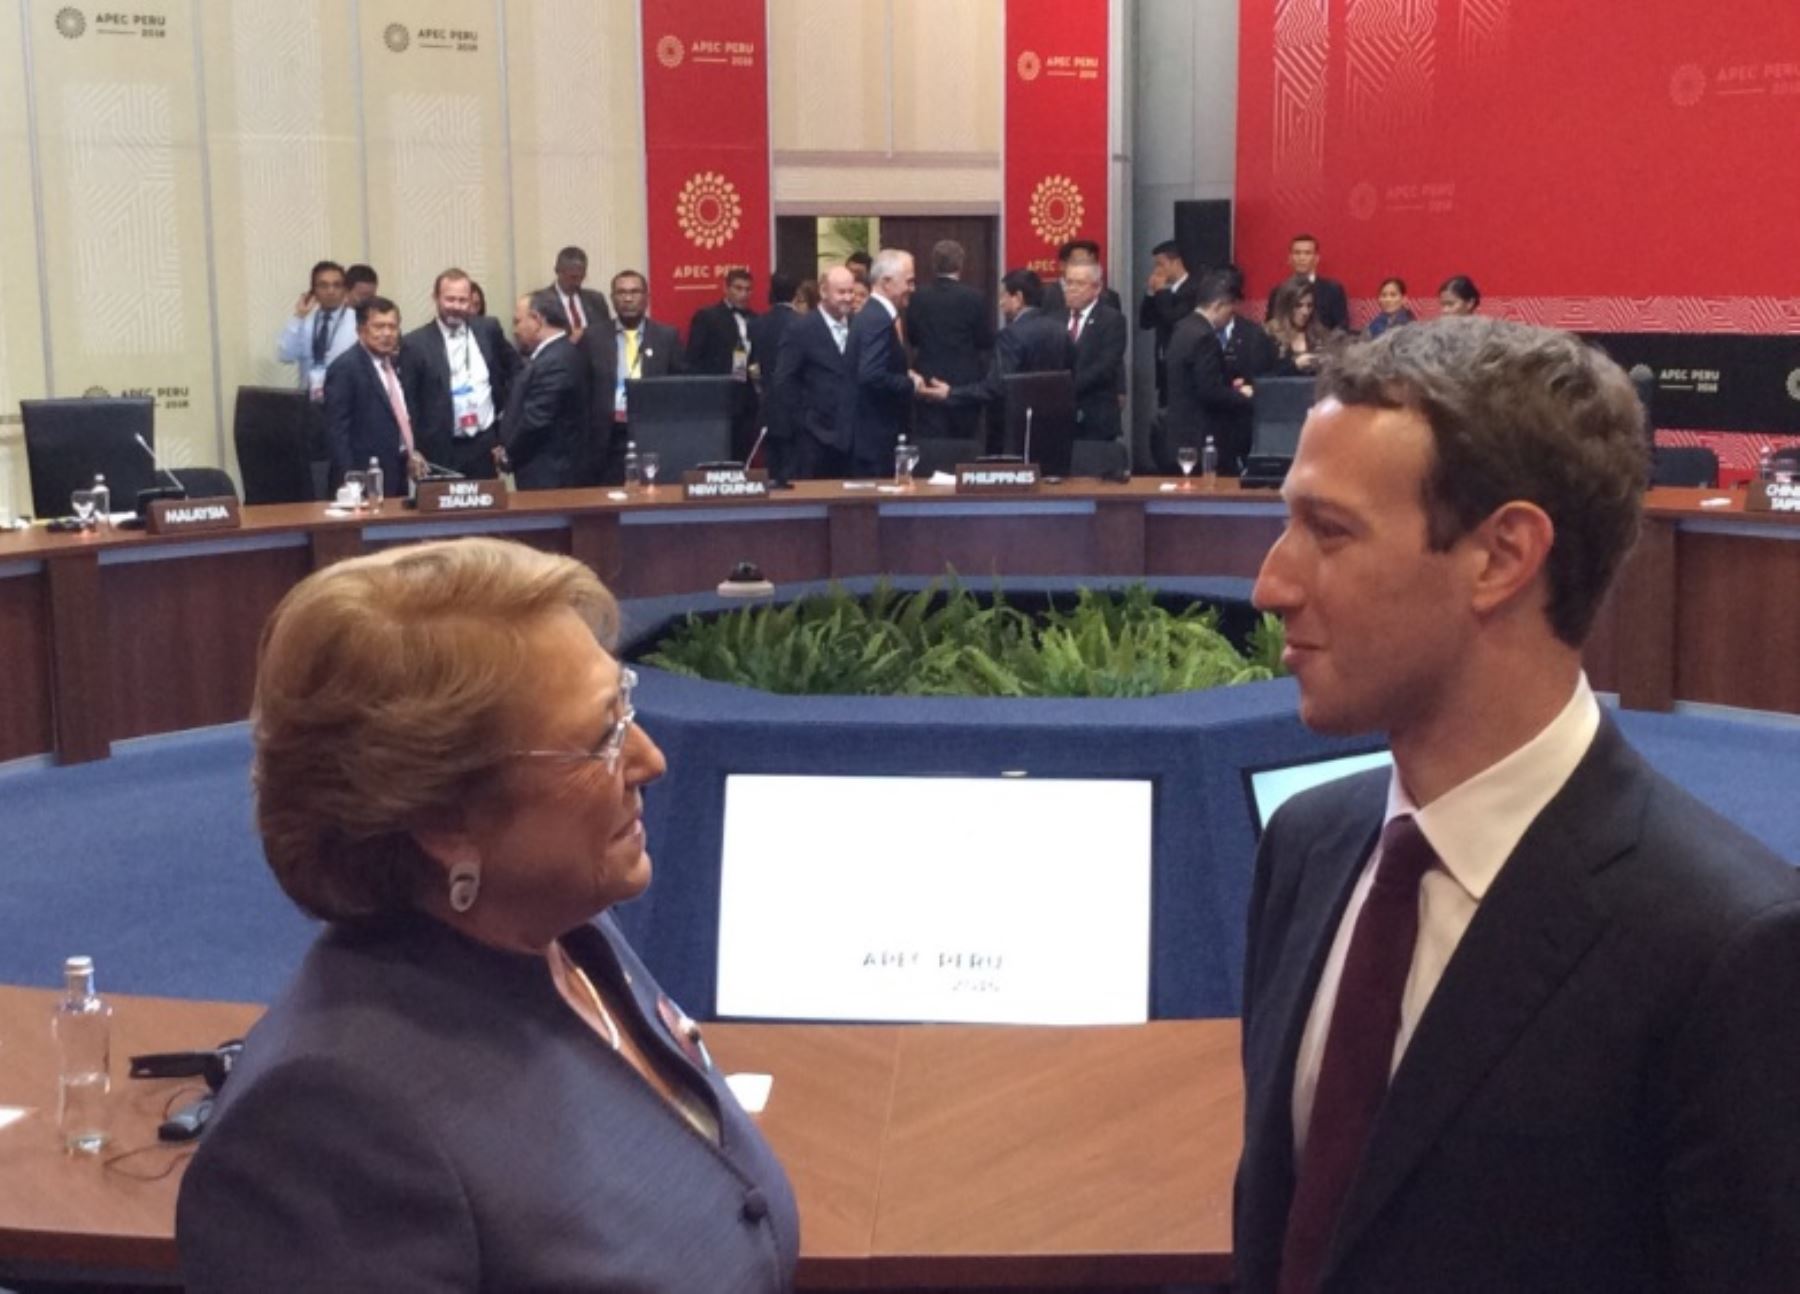 El creador de Facebook, Mark Zuckerberg, dialoga con Michelle Bachelet, en el marco de la reunión de APEC 2016.